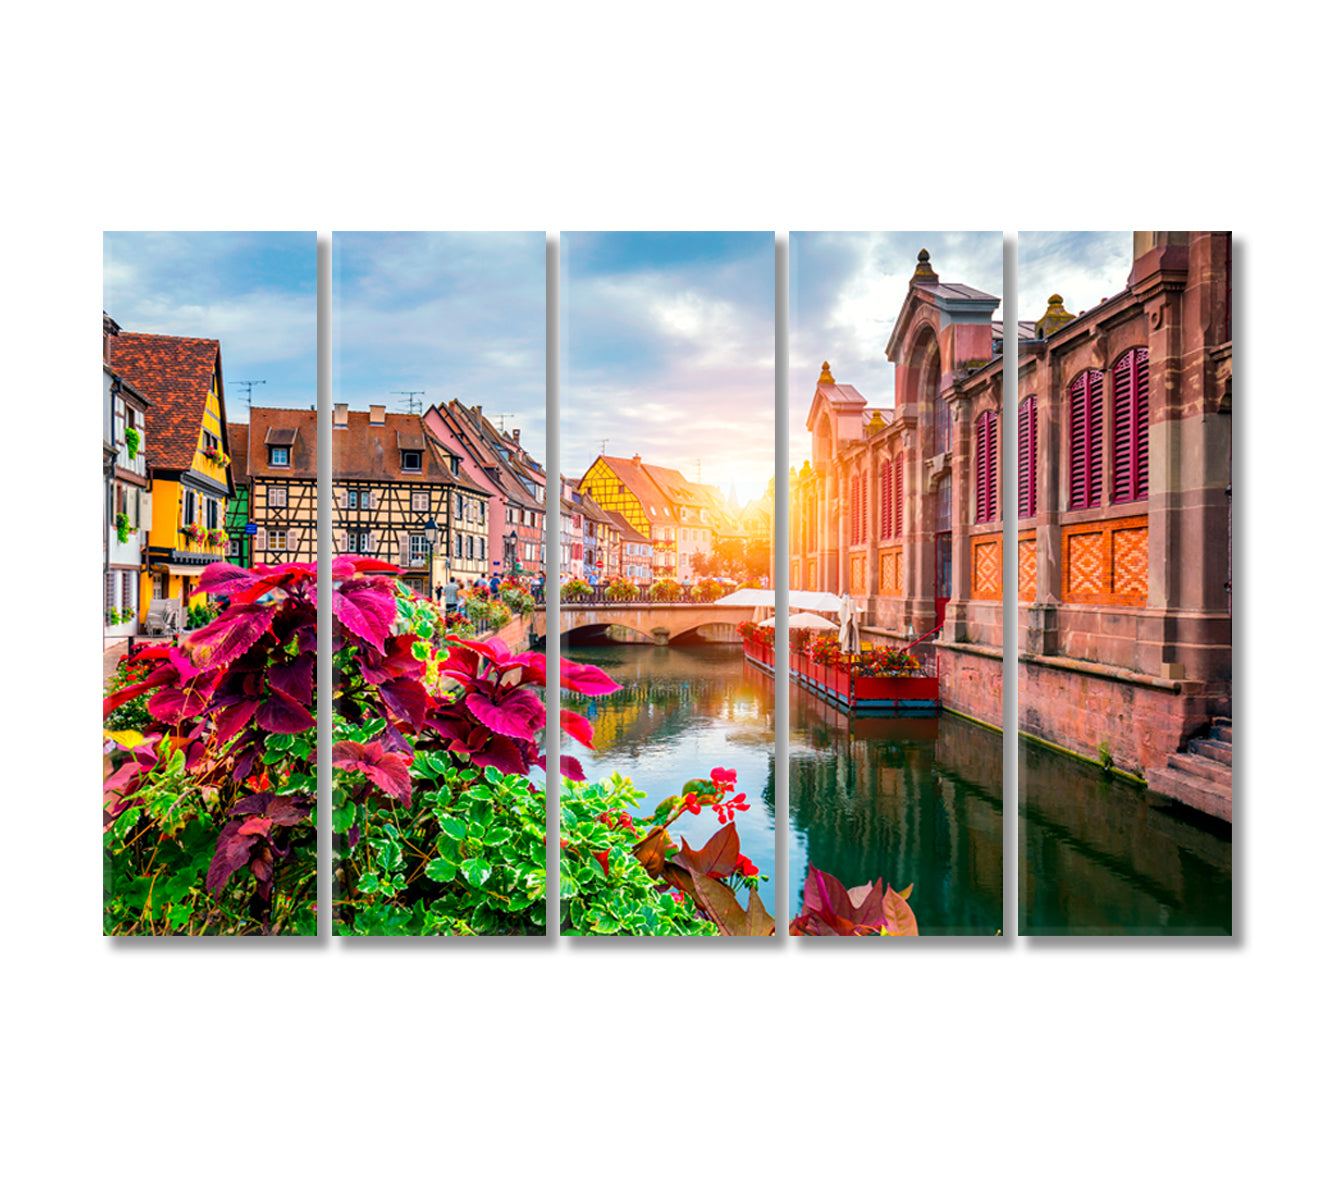 Little Venice Colmar Alsace France Canvas Print-Canvas Print-CetArt-5 Panels-36x24 inches-CetArt